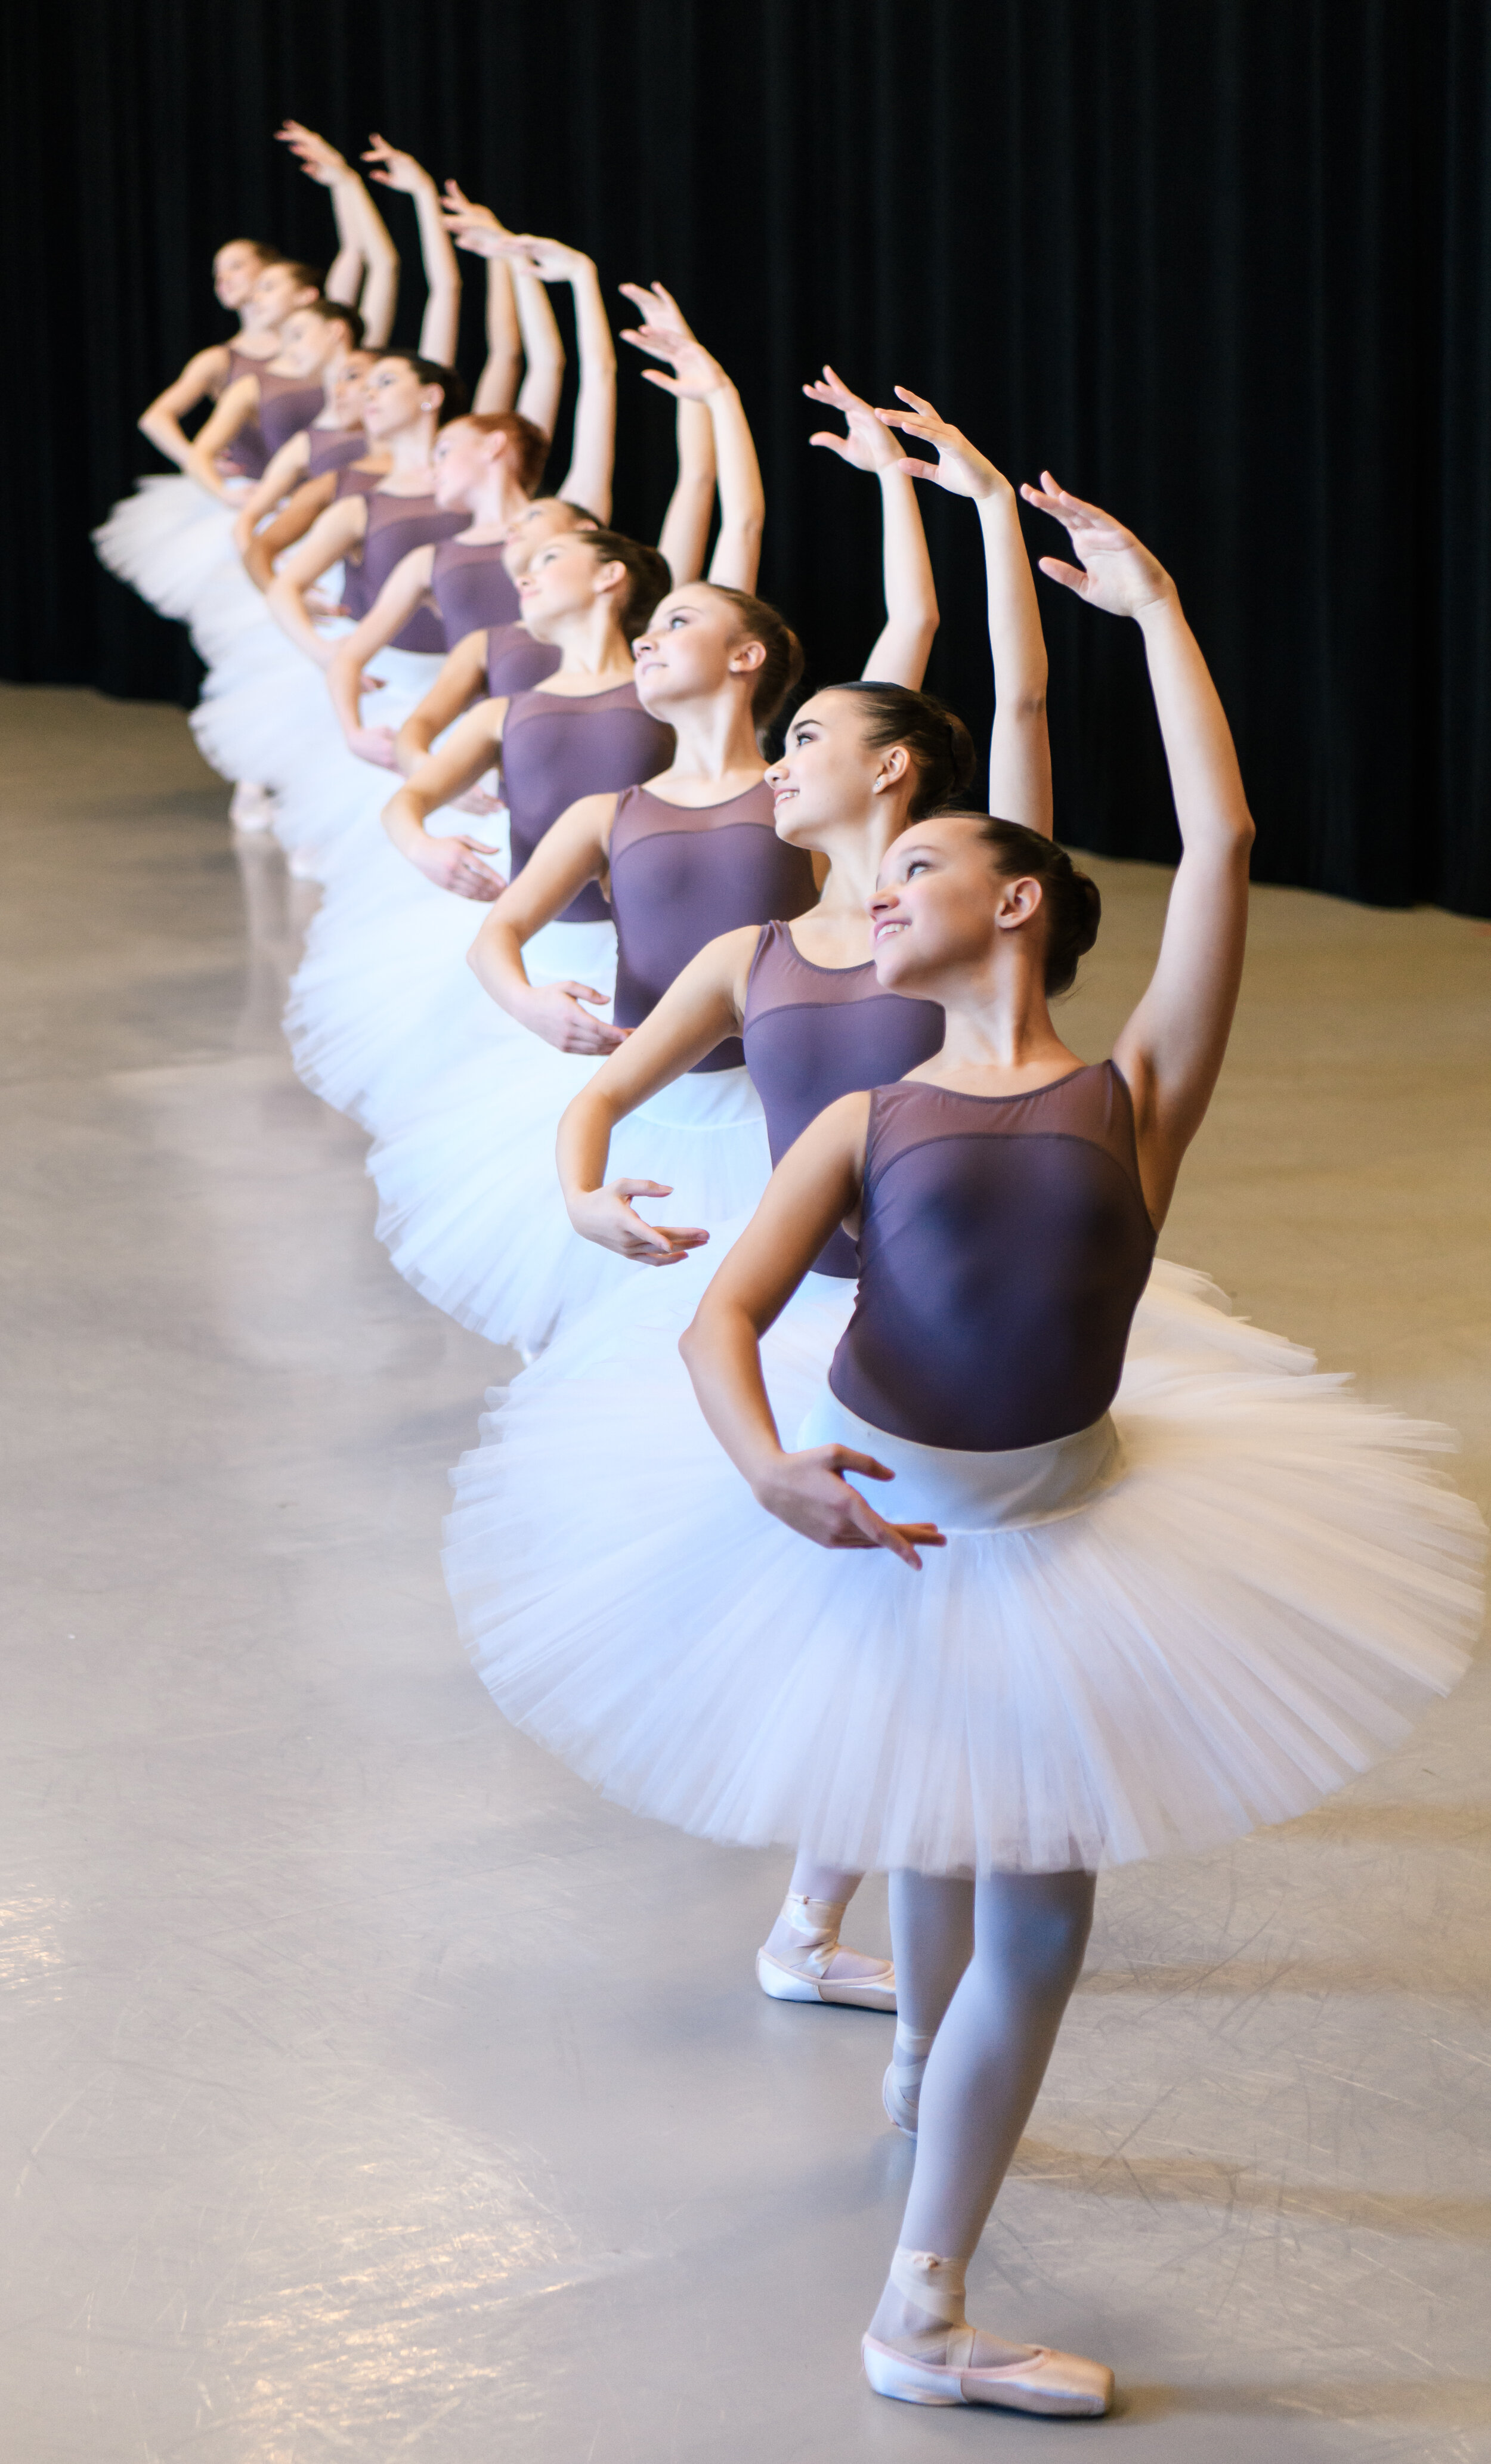 Colorado Ballet Academy